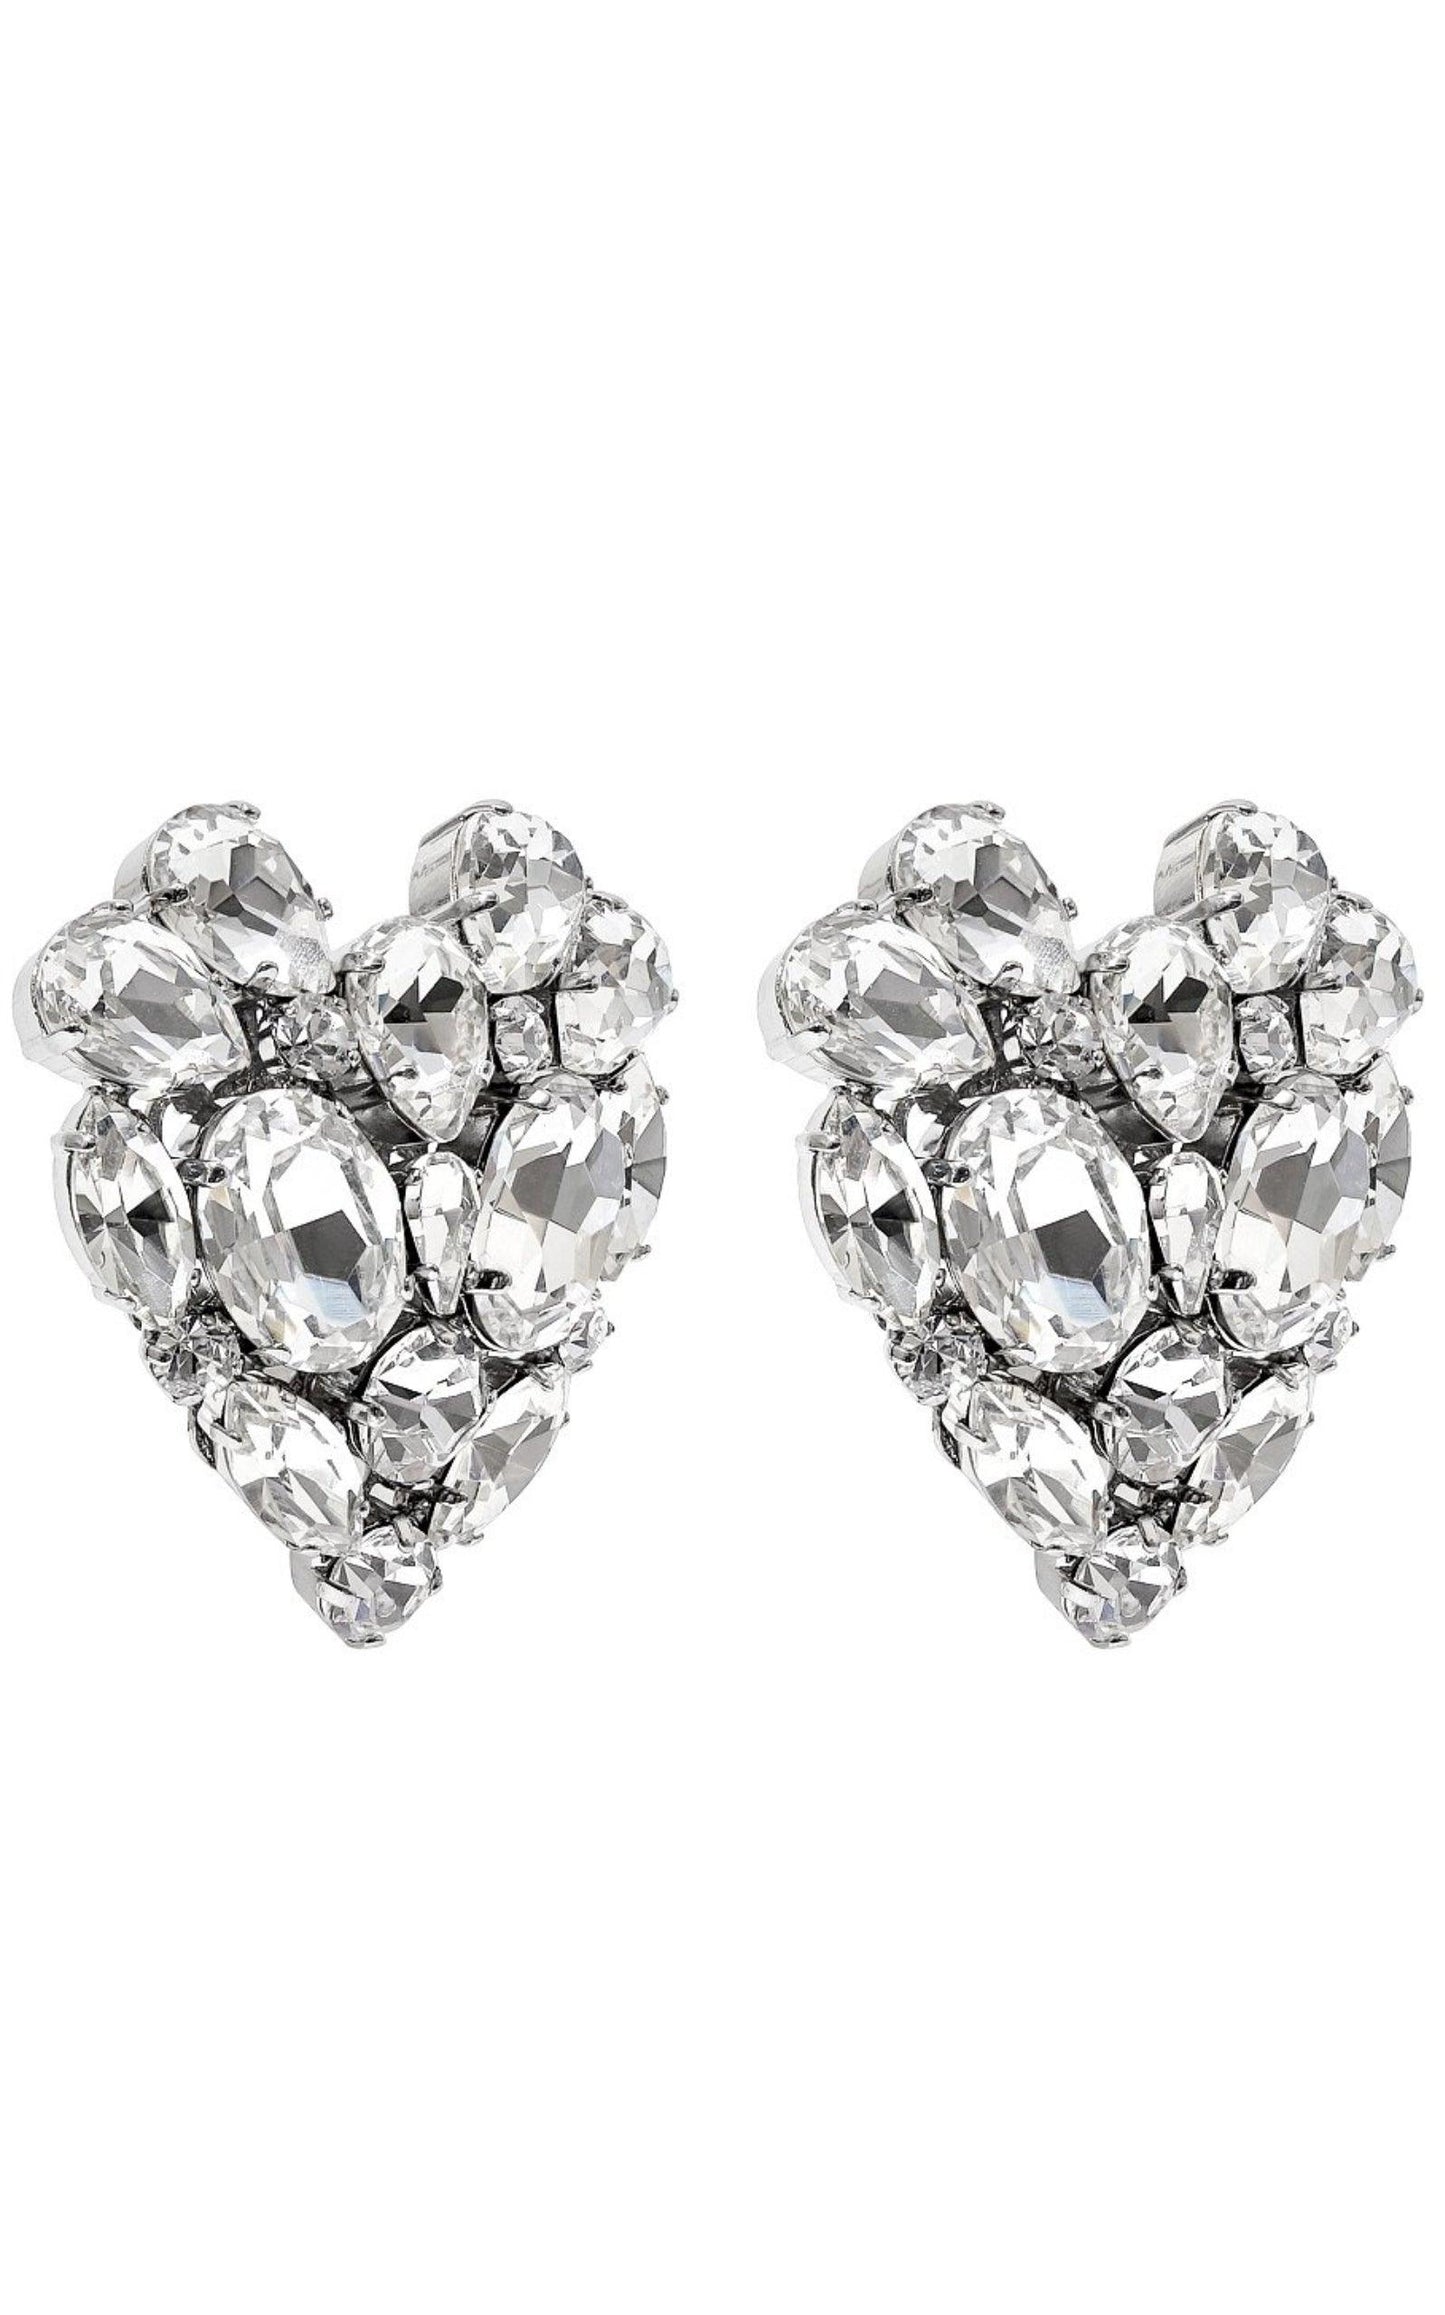 Silvertone Crystal Heart Stud Clip-On Earrings